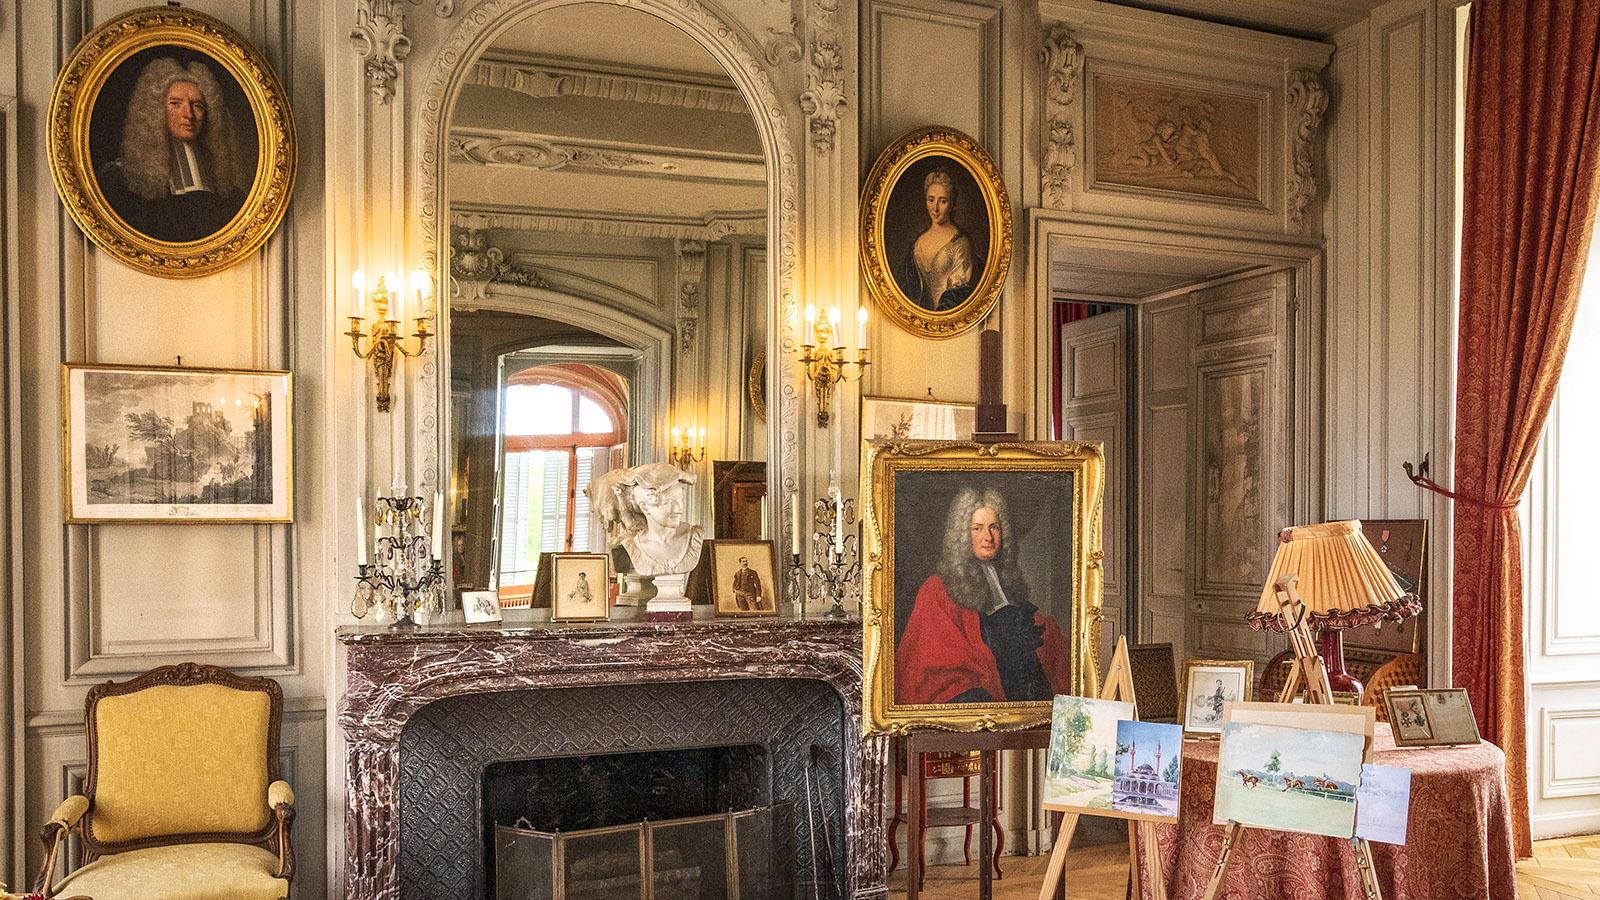 Ein Salon im Museumsbereich des Château de la Bussière. Foto: Hilke Maunder